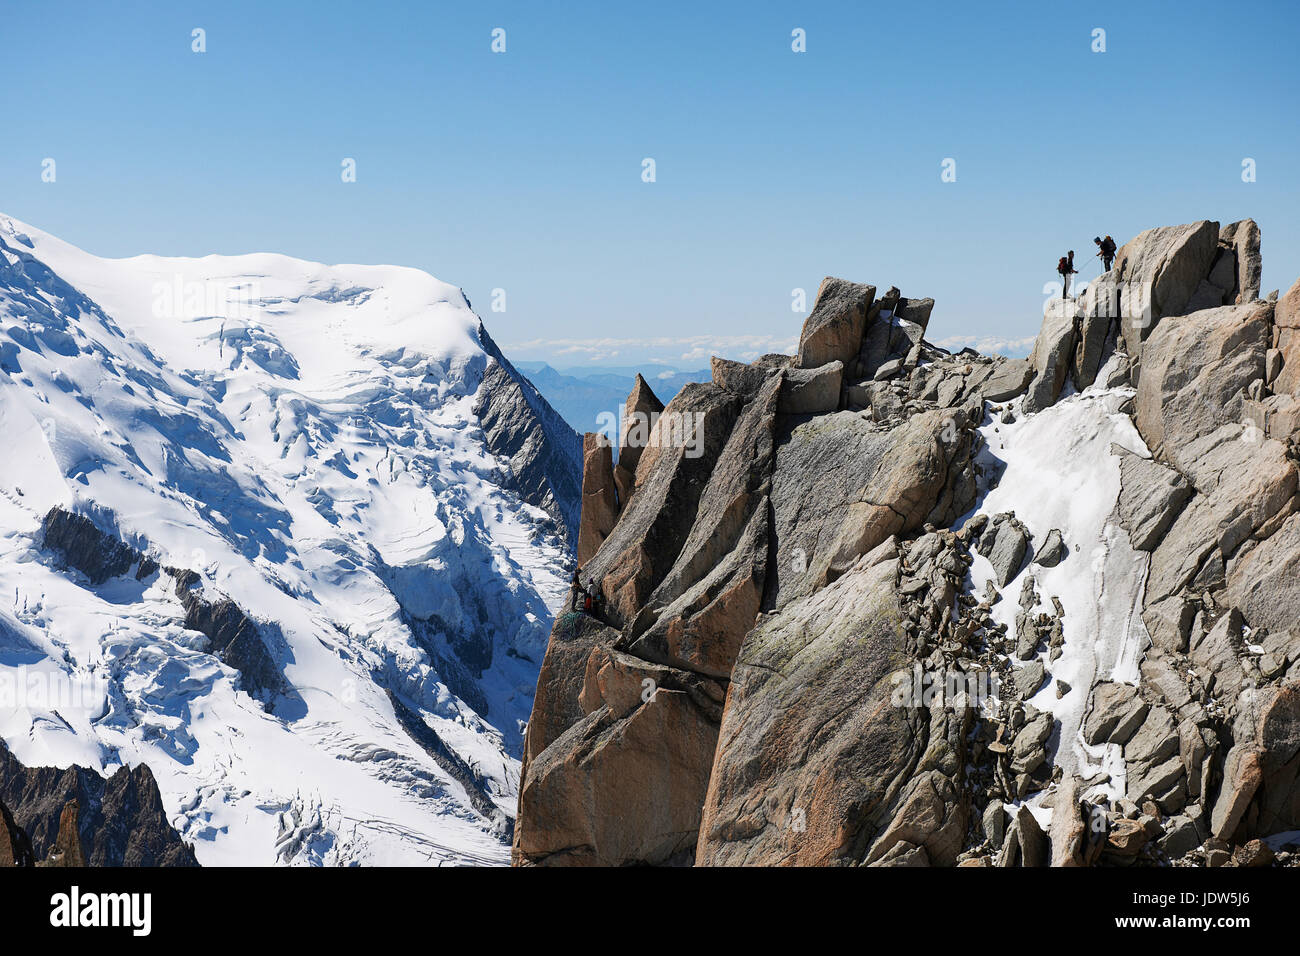 Mountaineers on summit, Chamonix, Haute Savoie, France Stock Photo